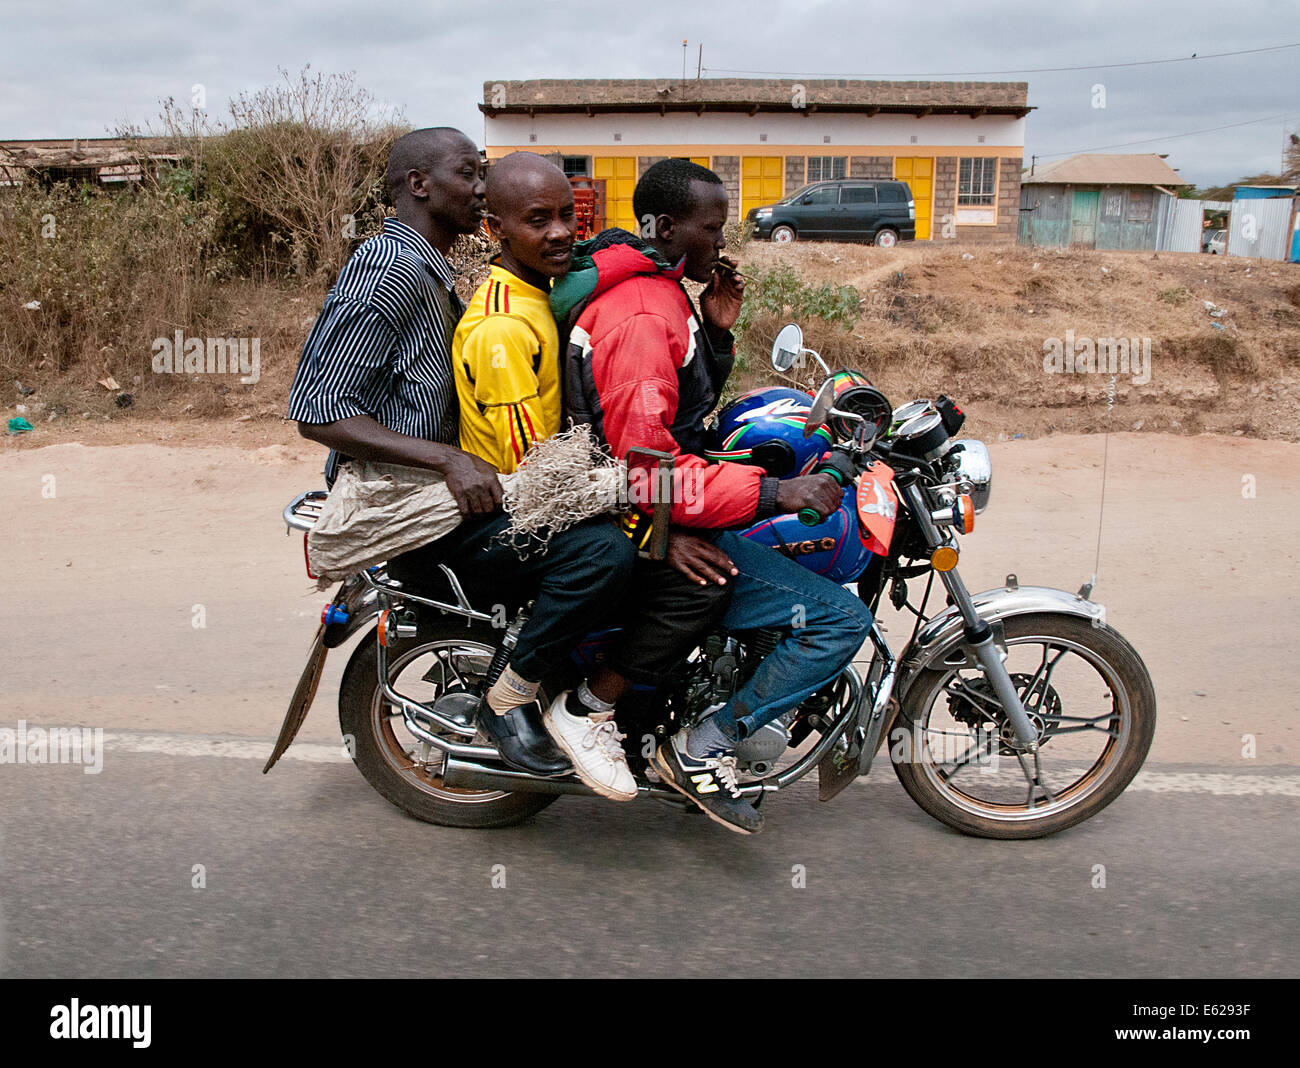 Ciclo motor sobrecargado taxi con tres hombres dos pasajeros en Namanga Nairobi Kenya África carretera MOTOCICLETA TAXI OVERLO SOBRECARGA Foto de stock